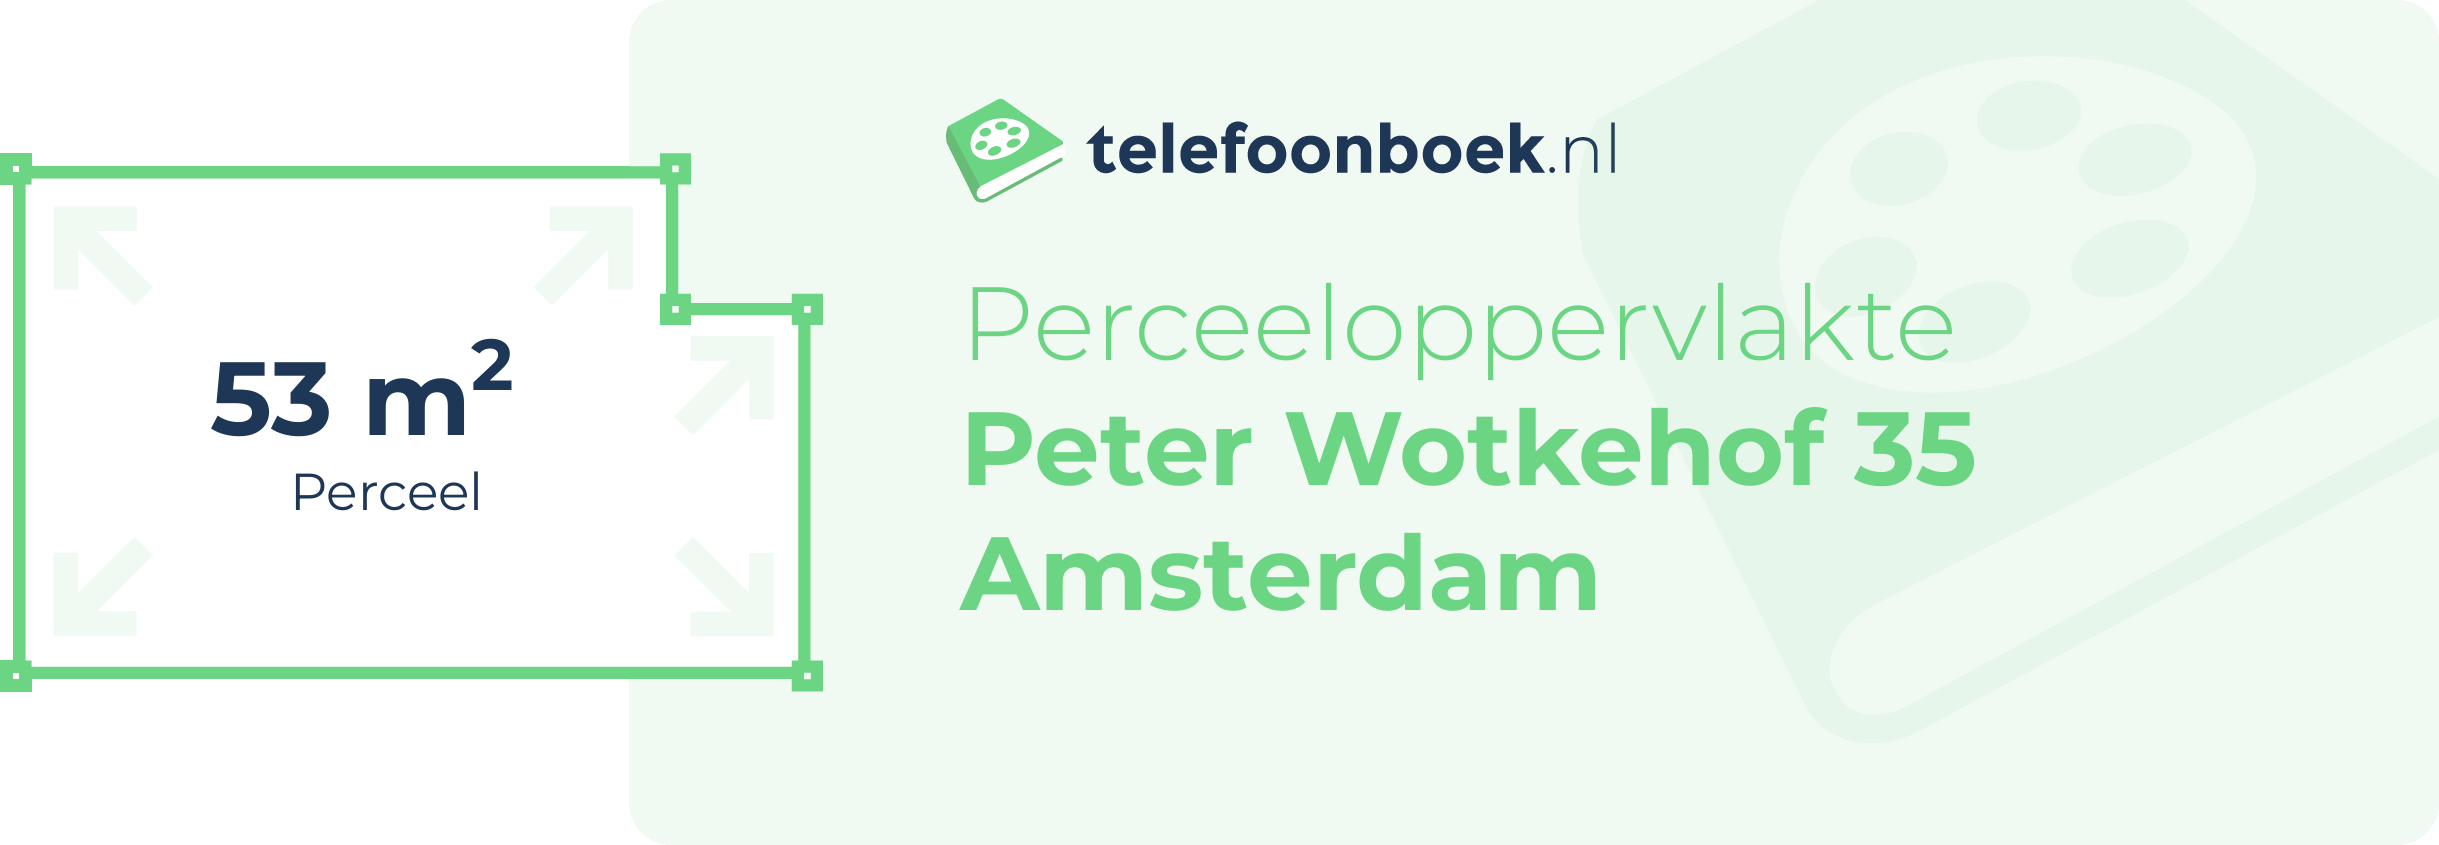 Perceeloppervlakte Peter Wotkehof 35 Amsterdam